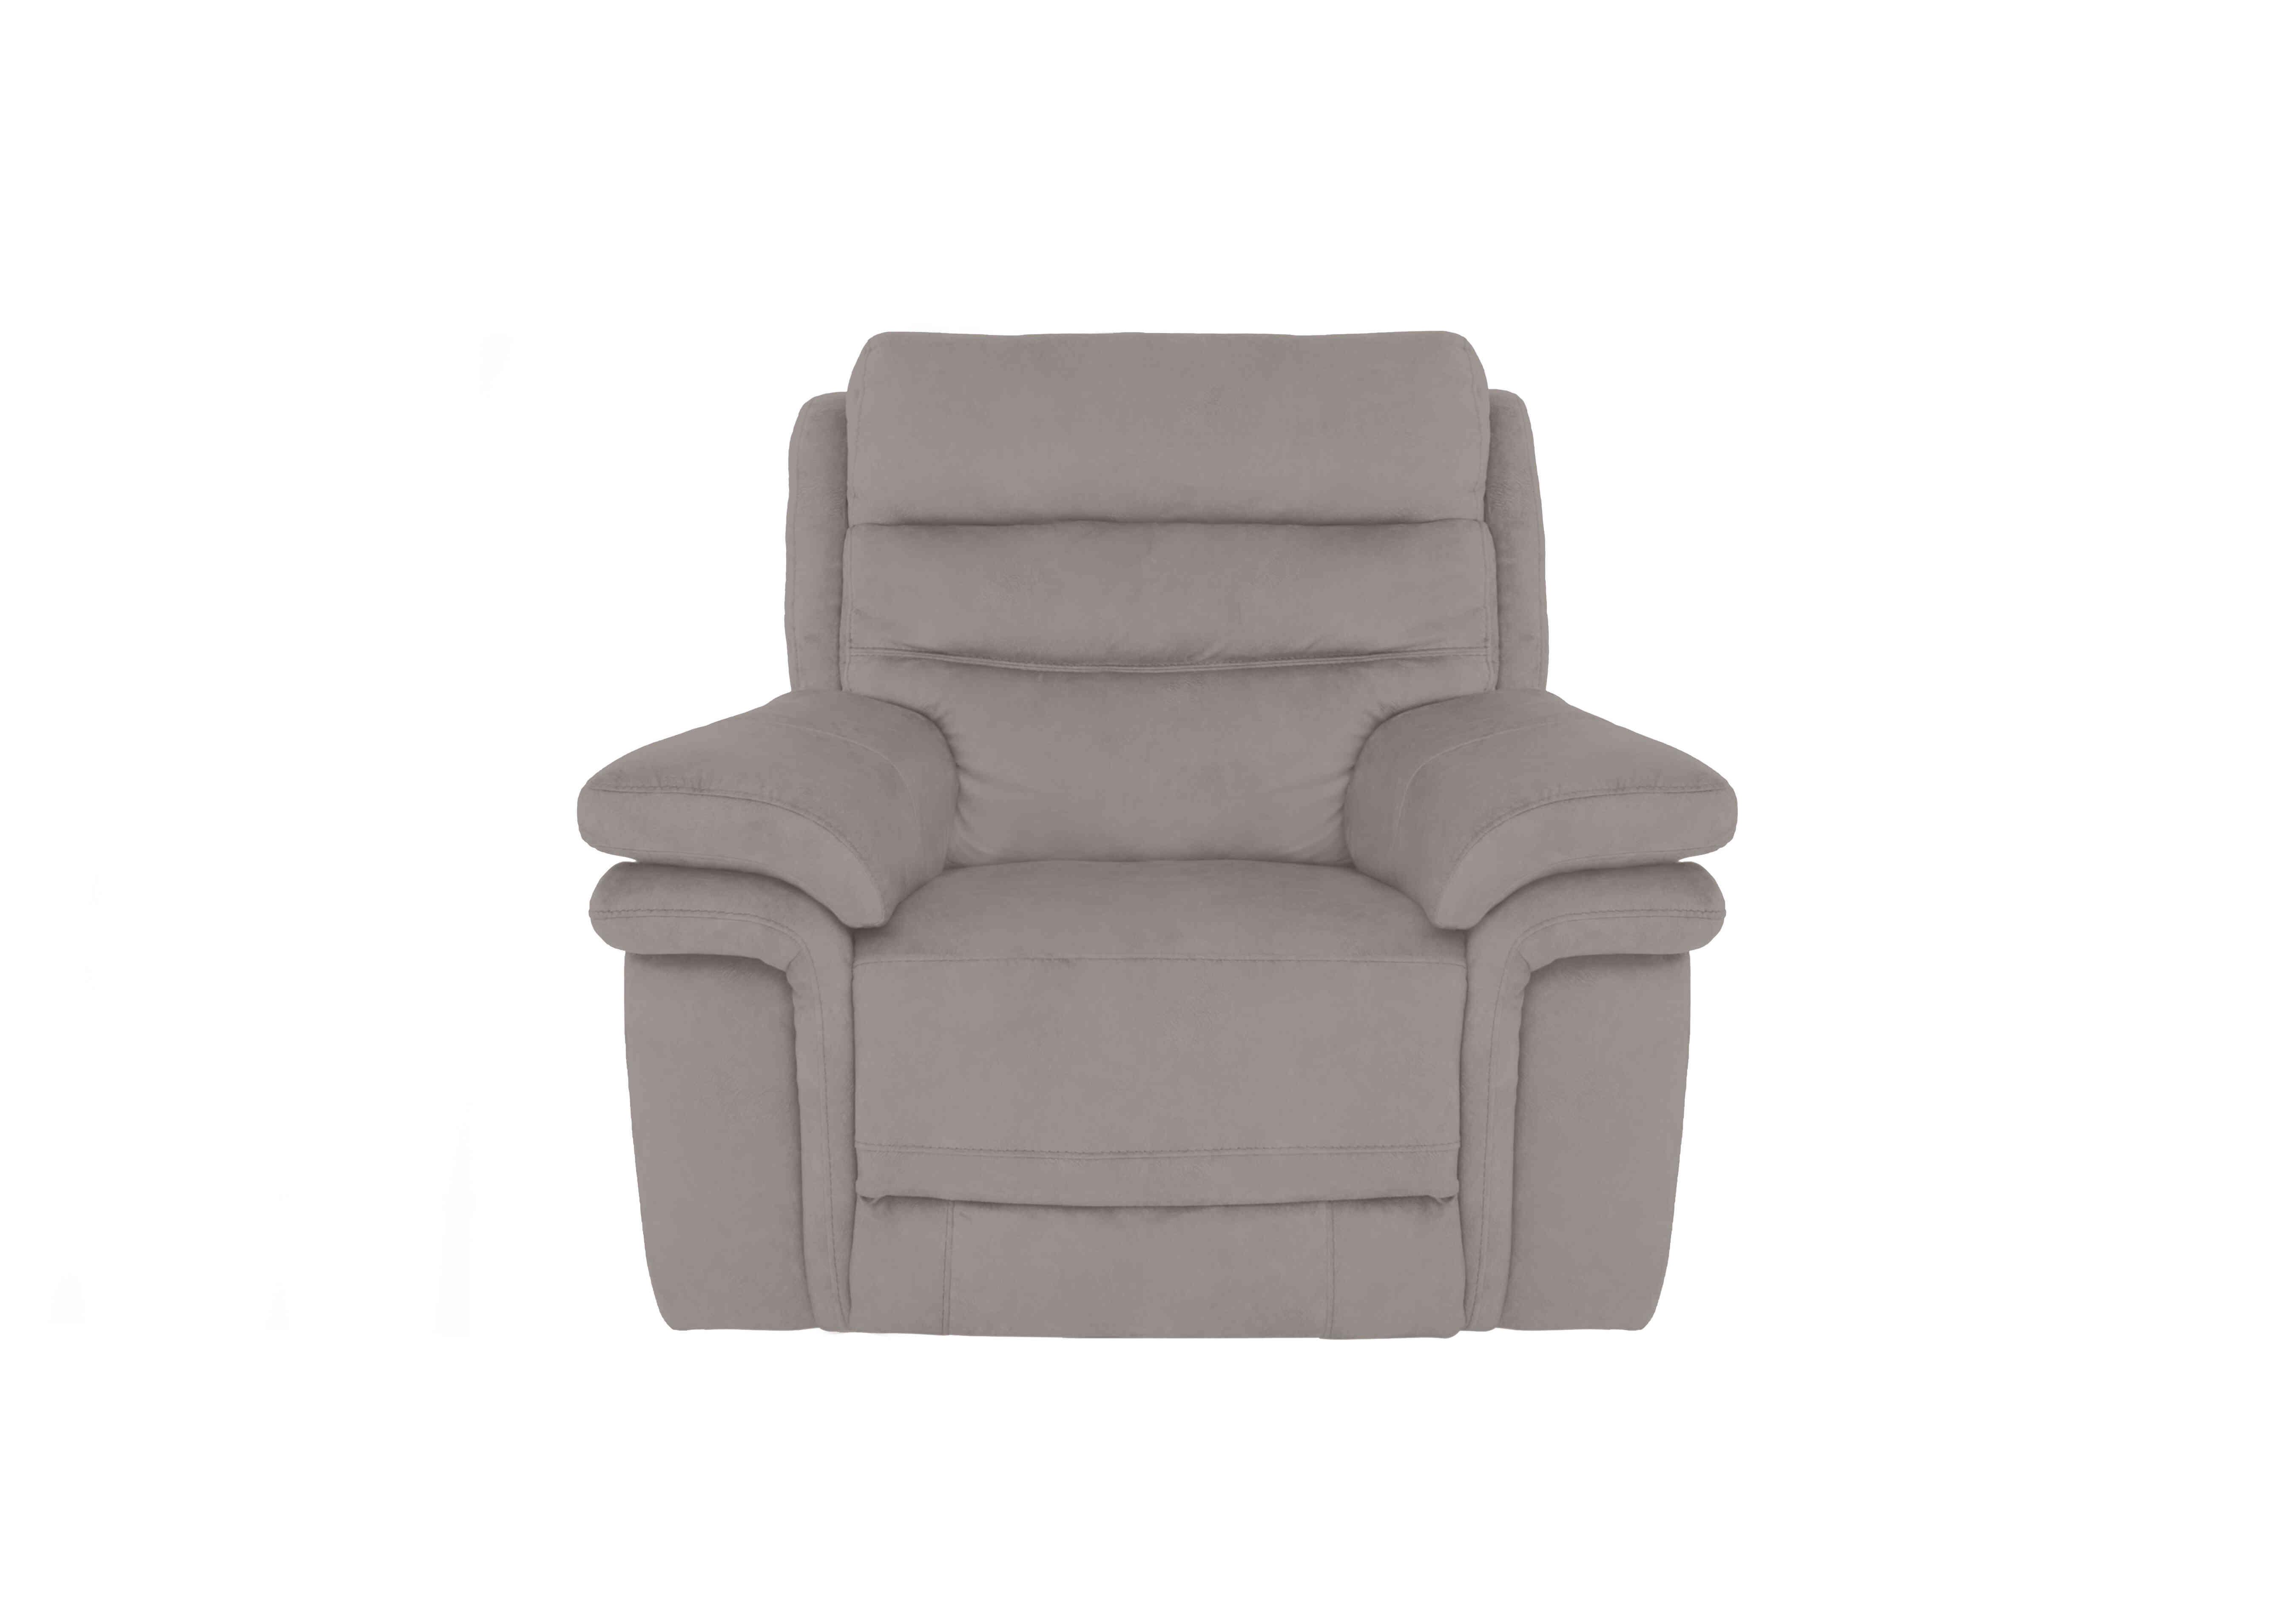 Berlin Fabric Chair in Velvet Sand Vv-0303 on Furniture Village